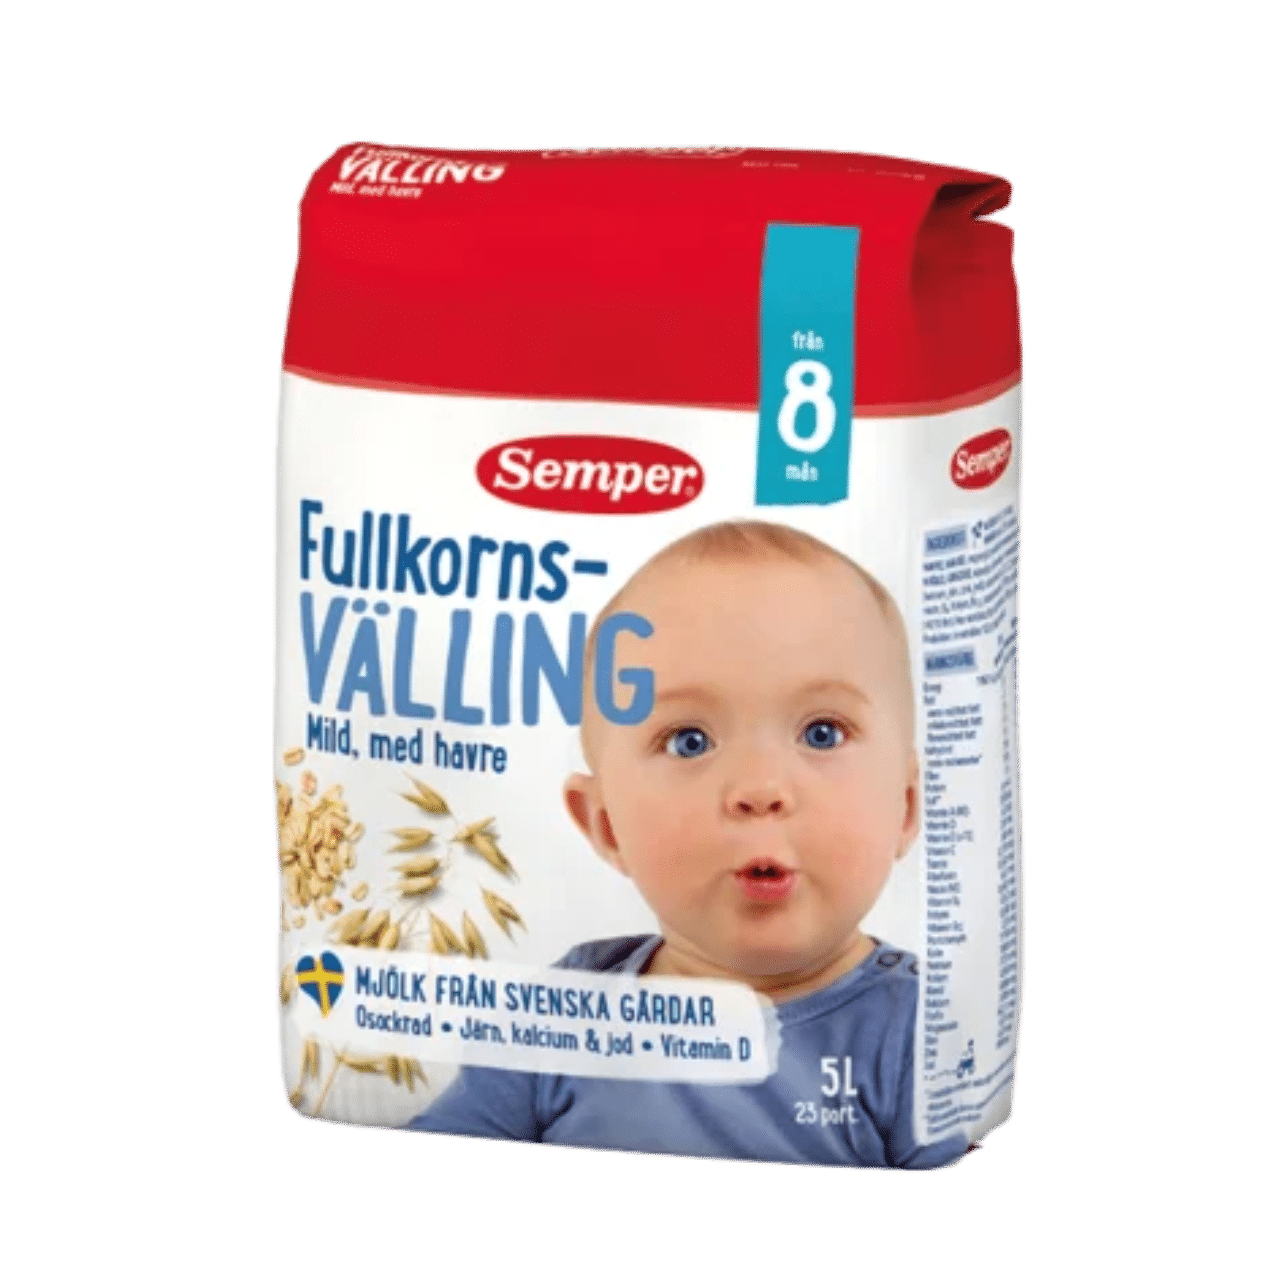 Sữa ngũ cốc Fullkorns VALLING Semper 8 tháng